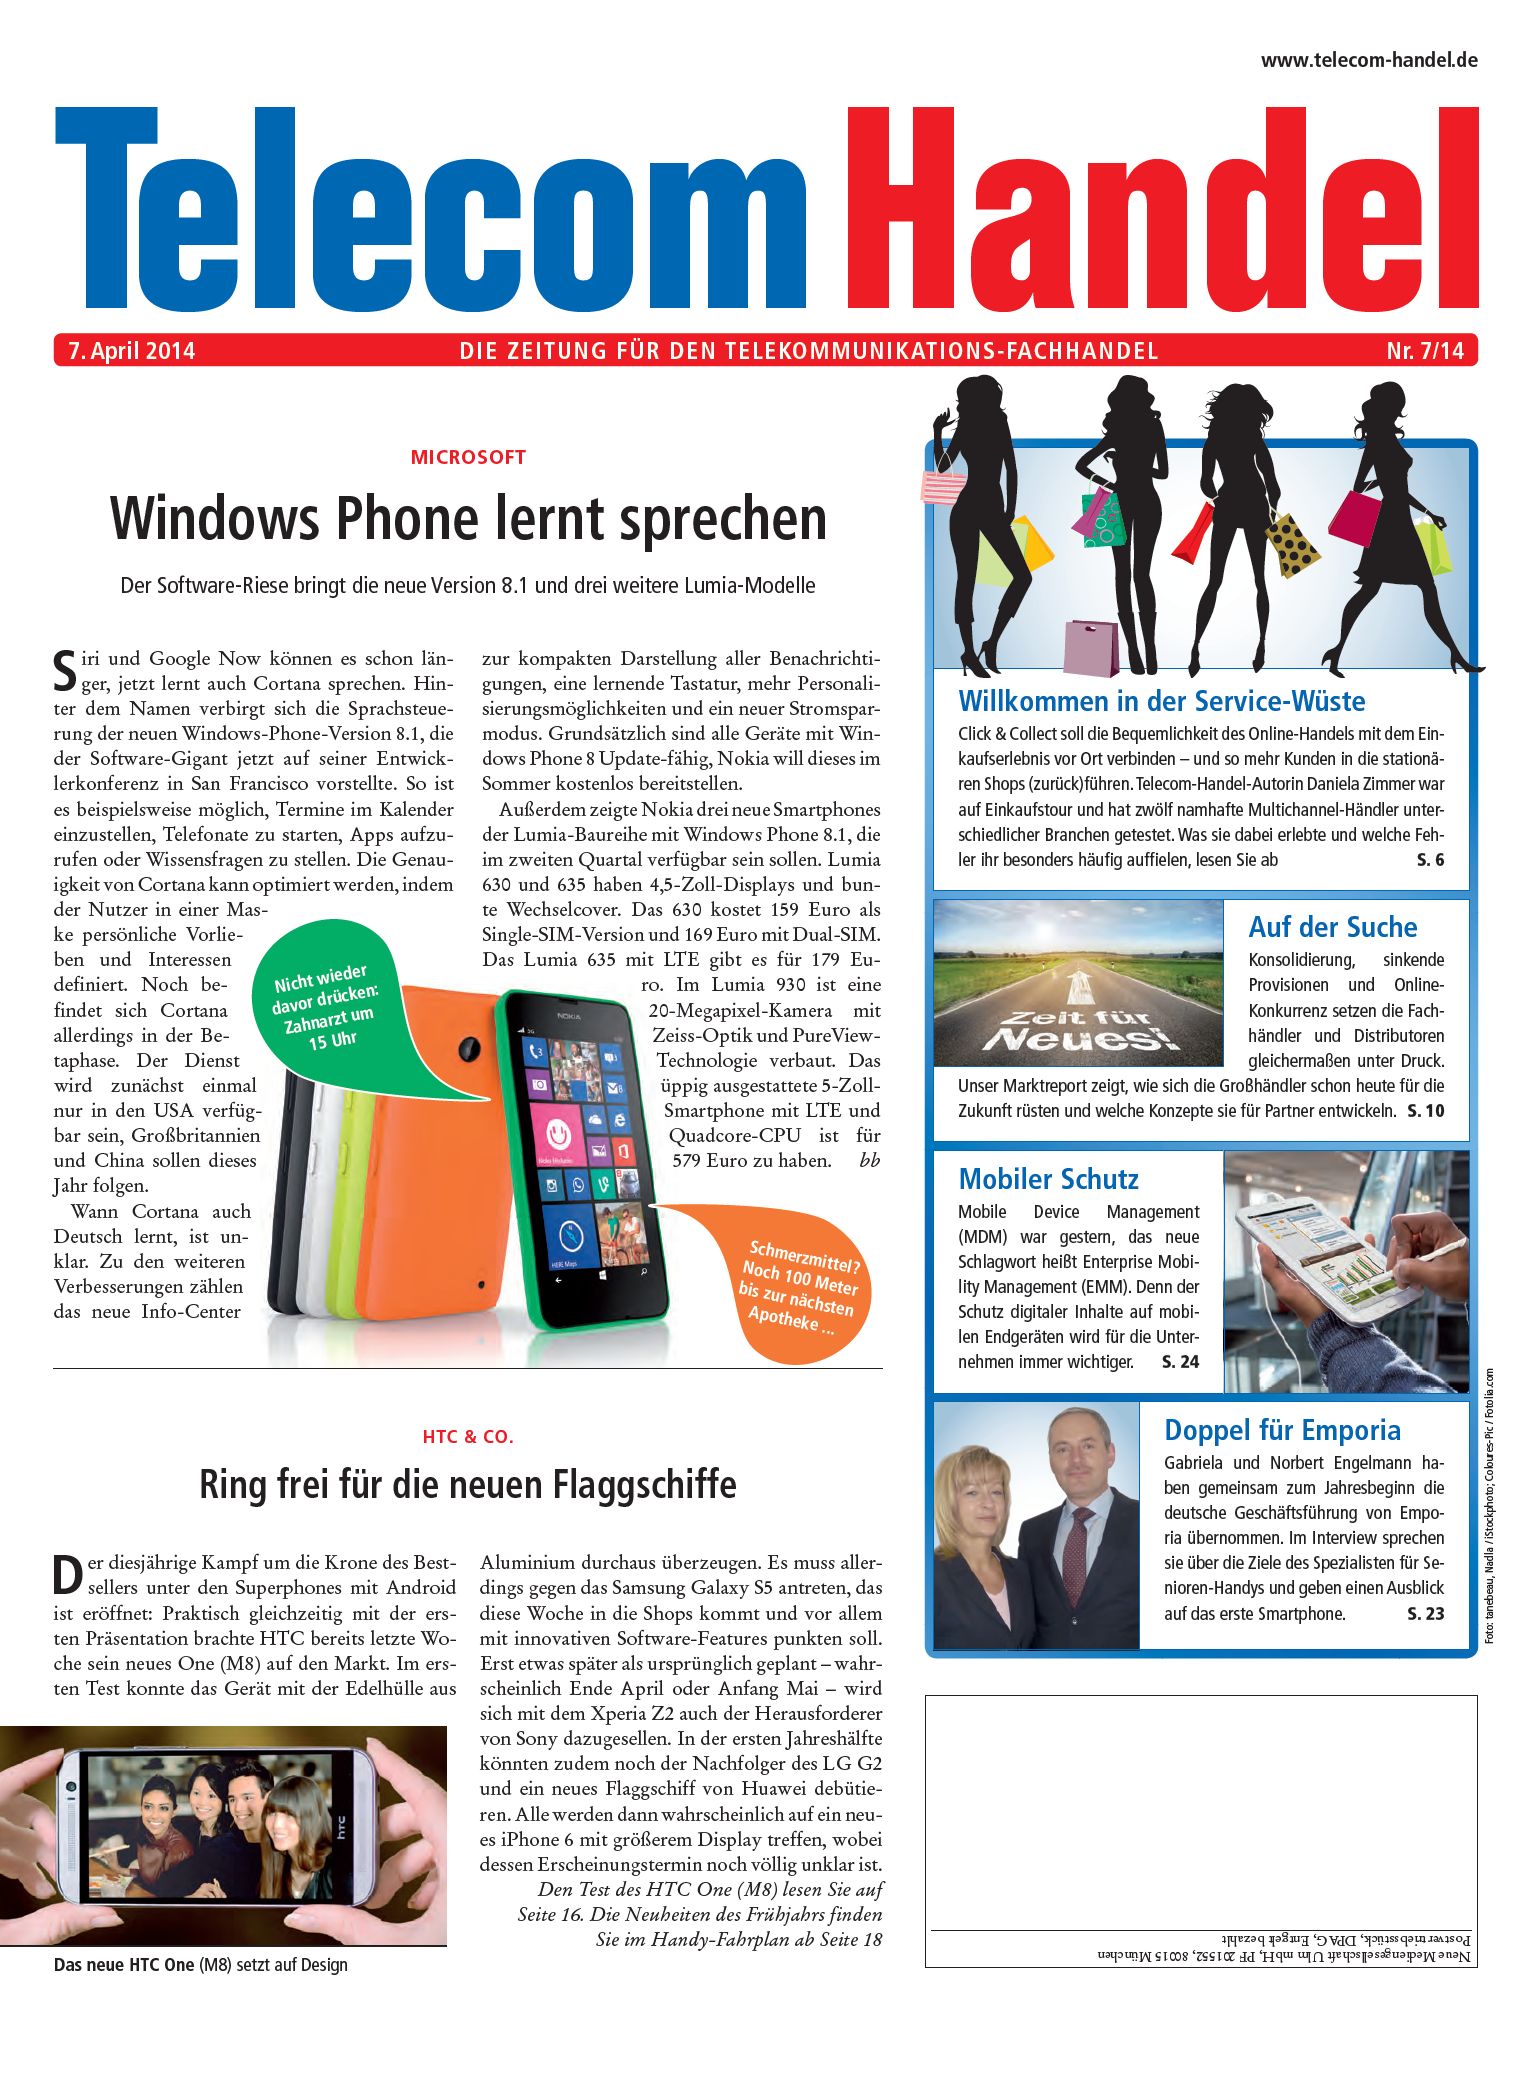 Telecom Handel Ausgabe 07/2014